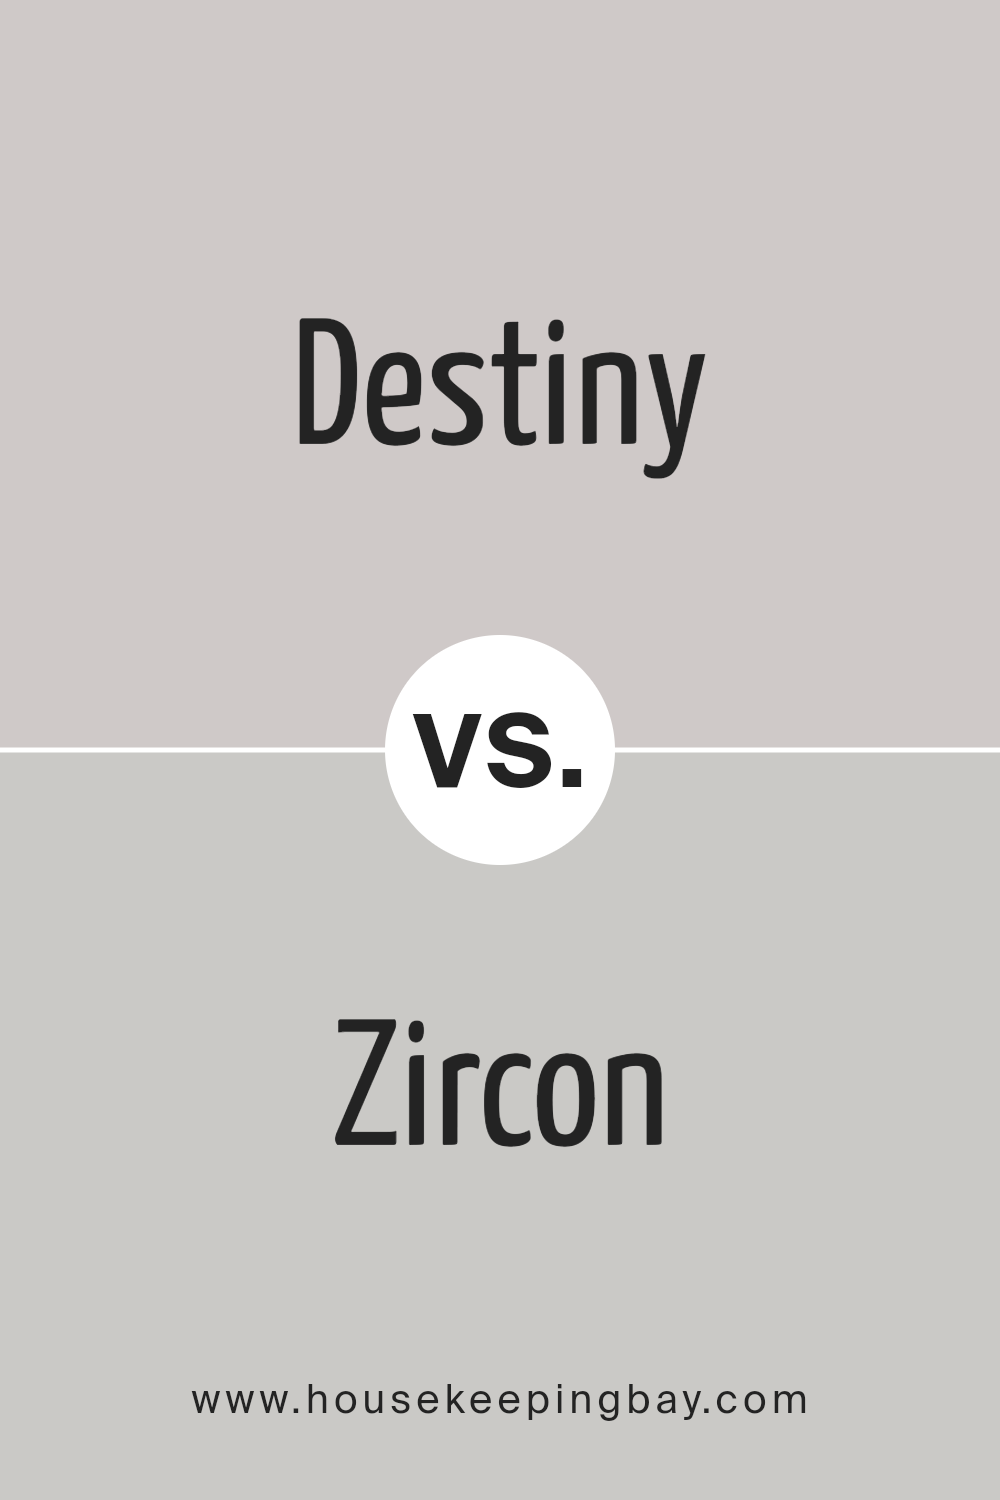 destiny_sw_6274_vs_zircon_sw_7667